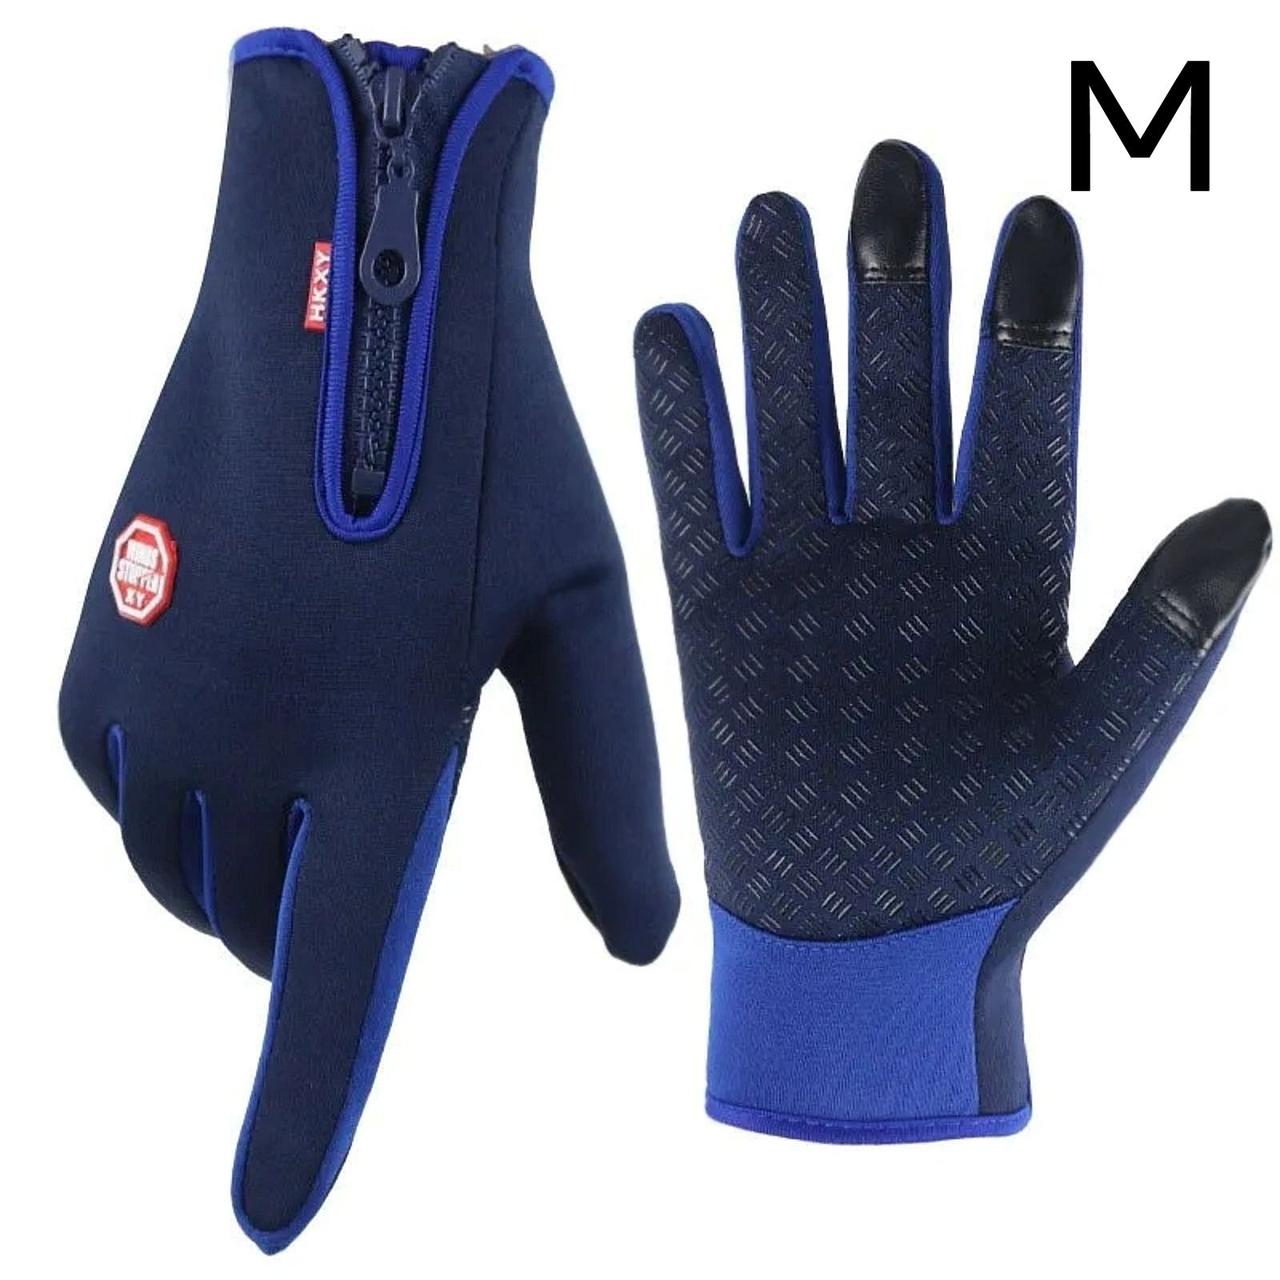 M. Чорні універсальні, спортивні, зимові рукавички з сенсором для телефону. Чорні чоловічі, жіночі рукавички. Сенсорні